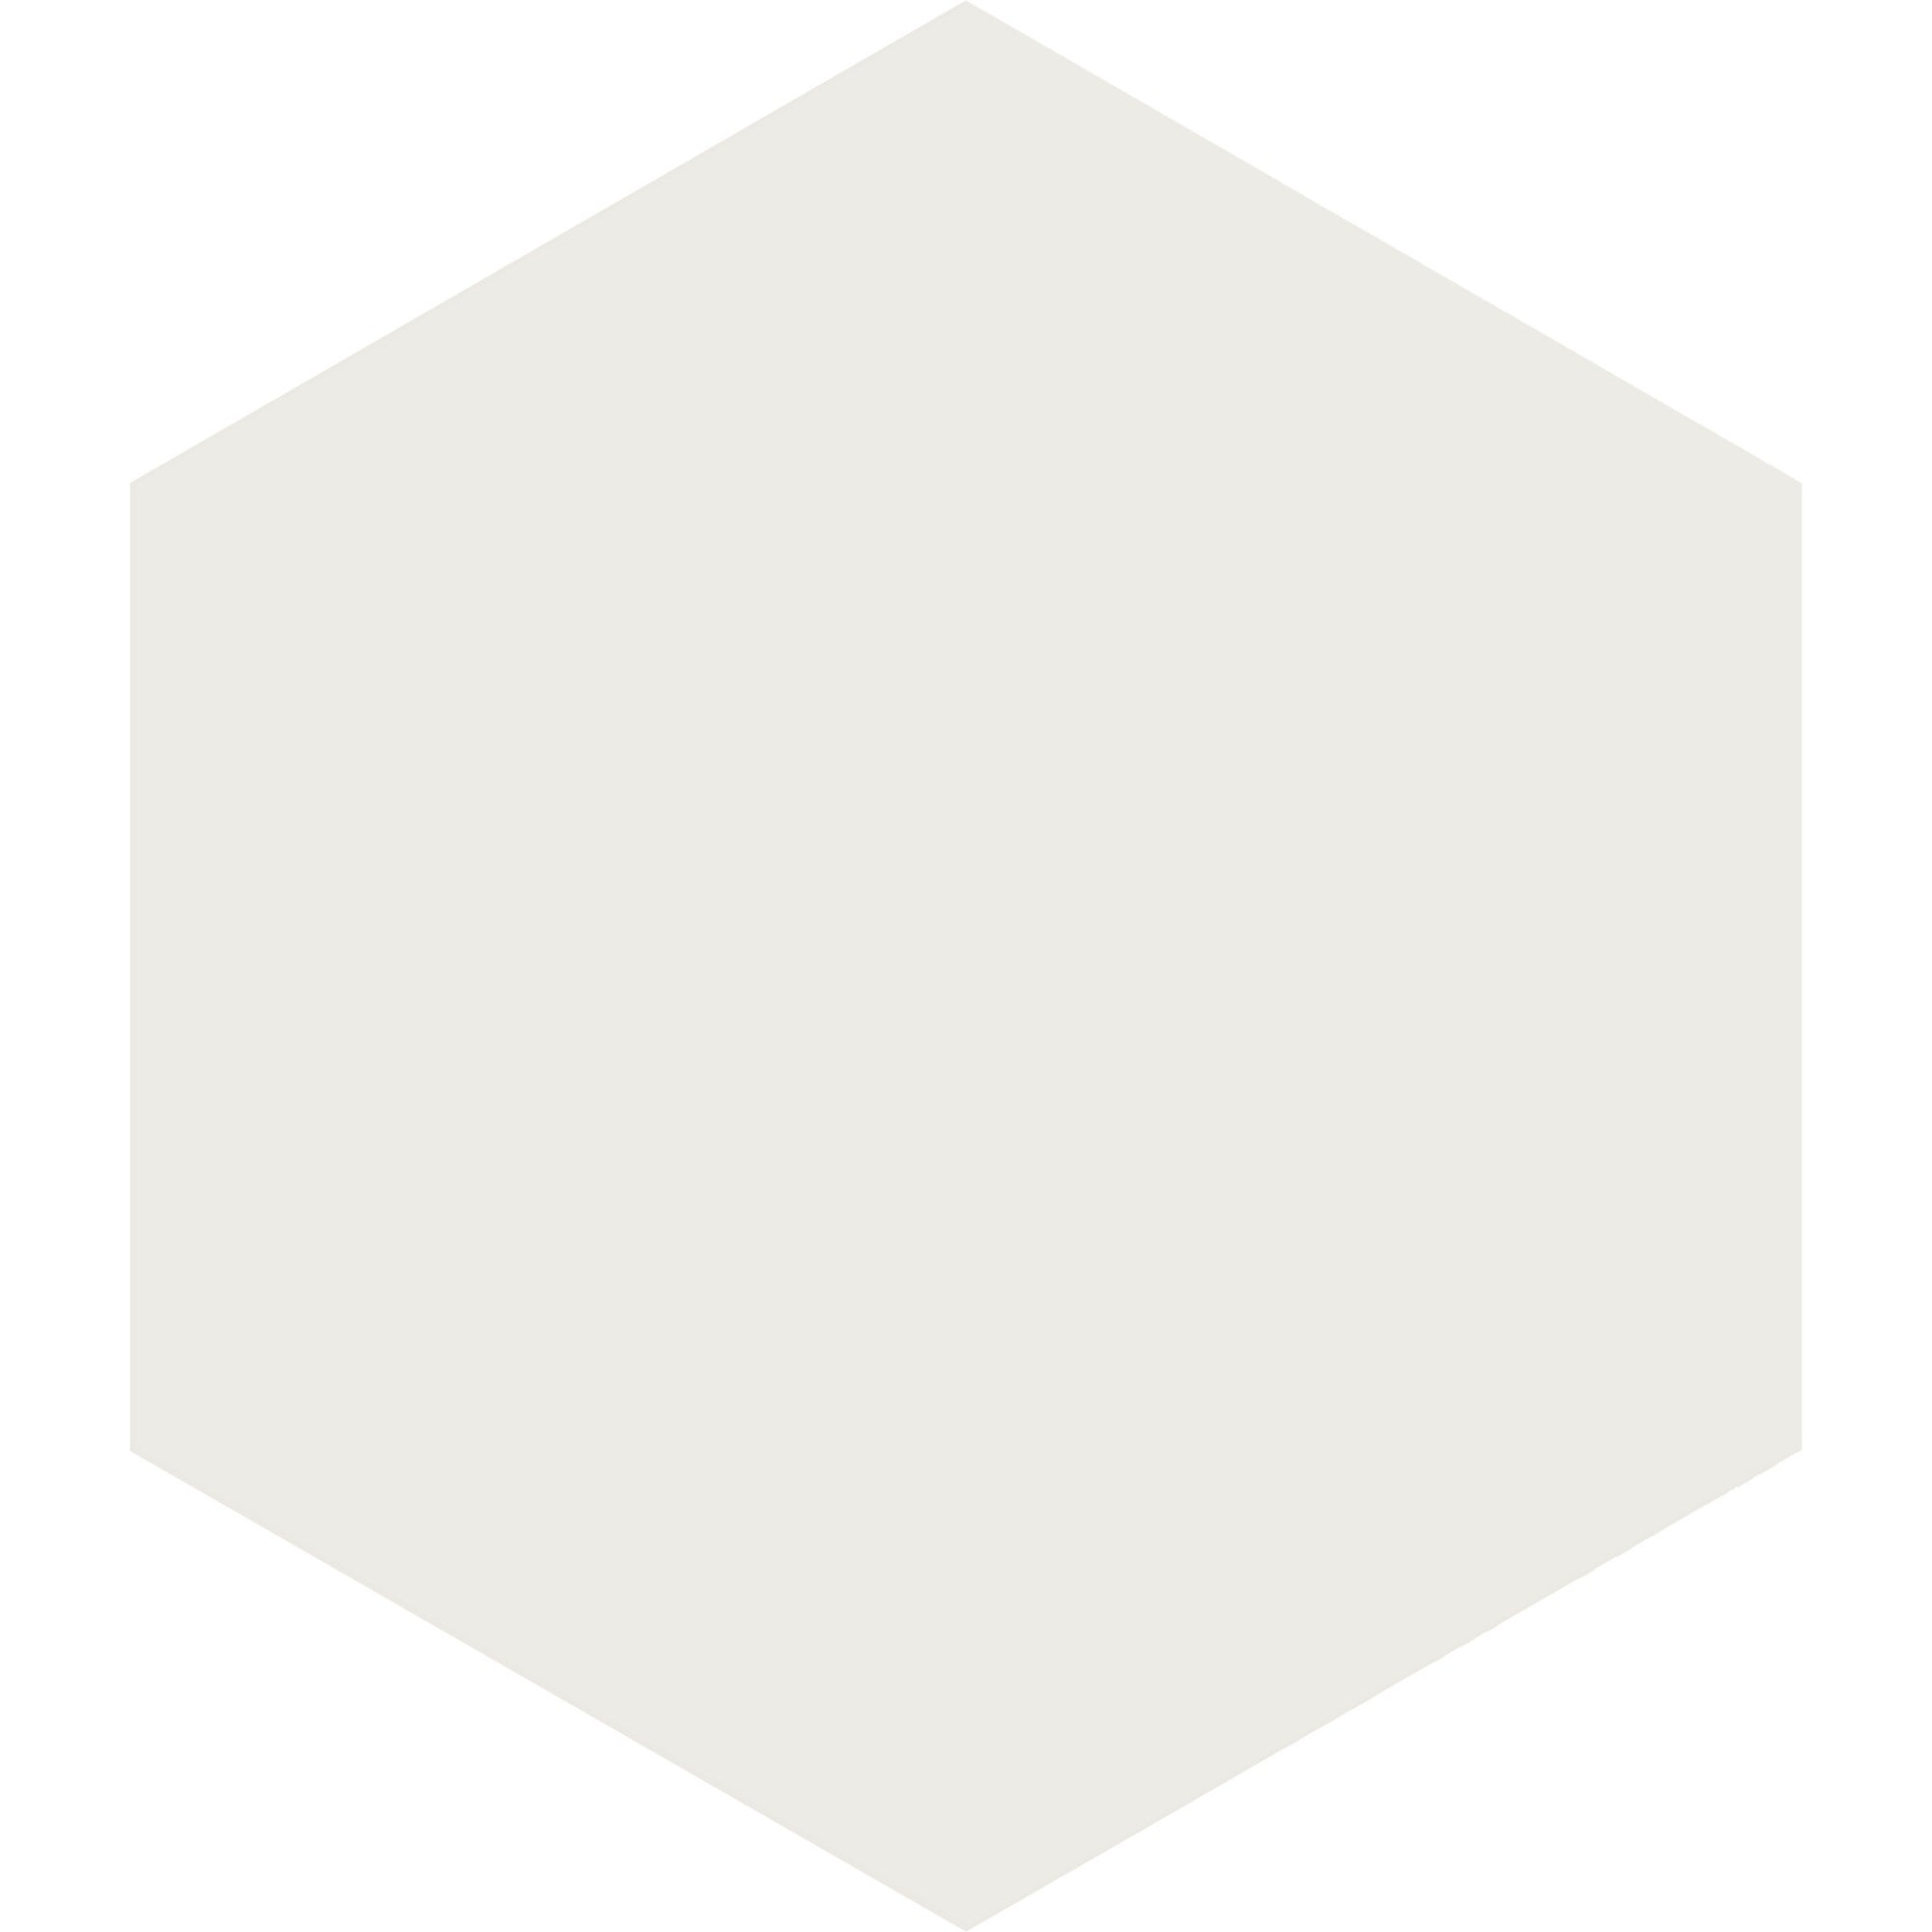 Arizona Tile - Paros Series 8.5" x 10" Rectified Color Body Porcelain Hexagon Tile - White